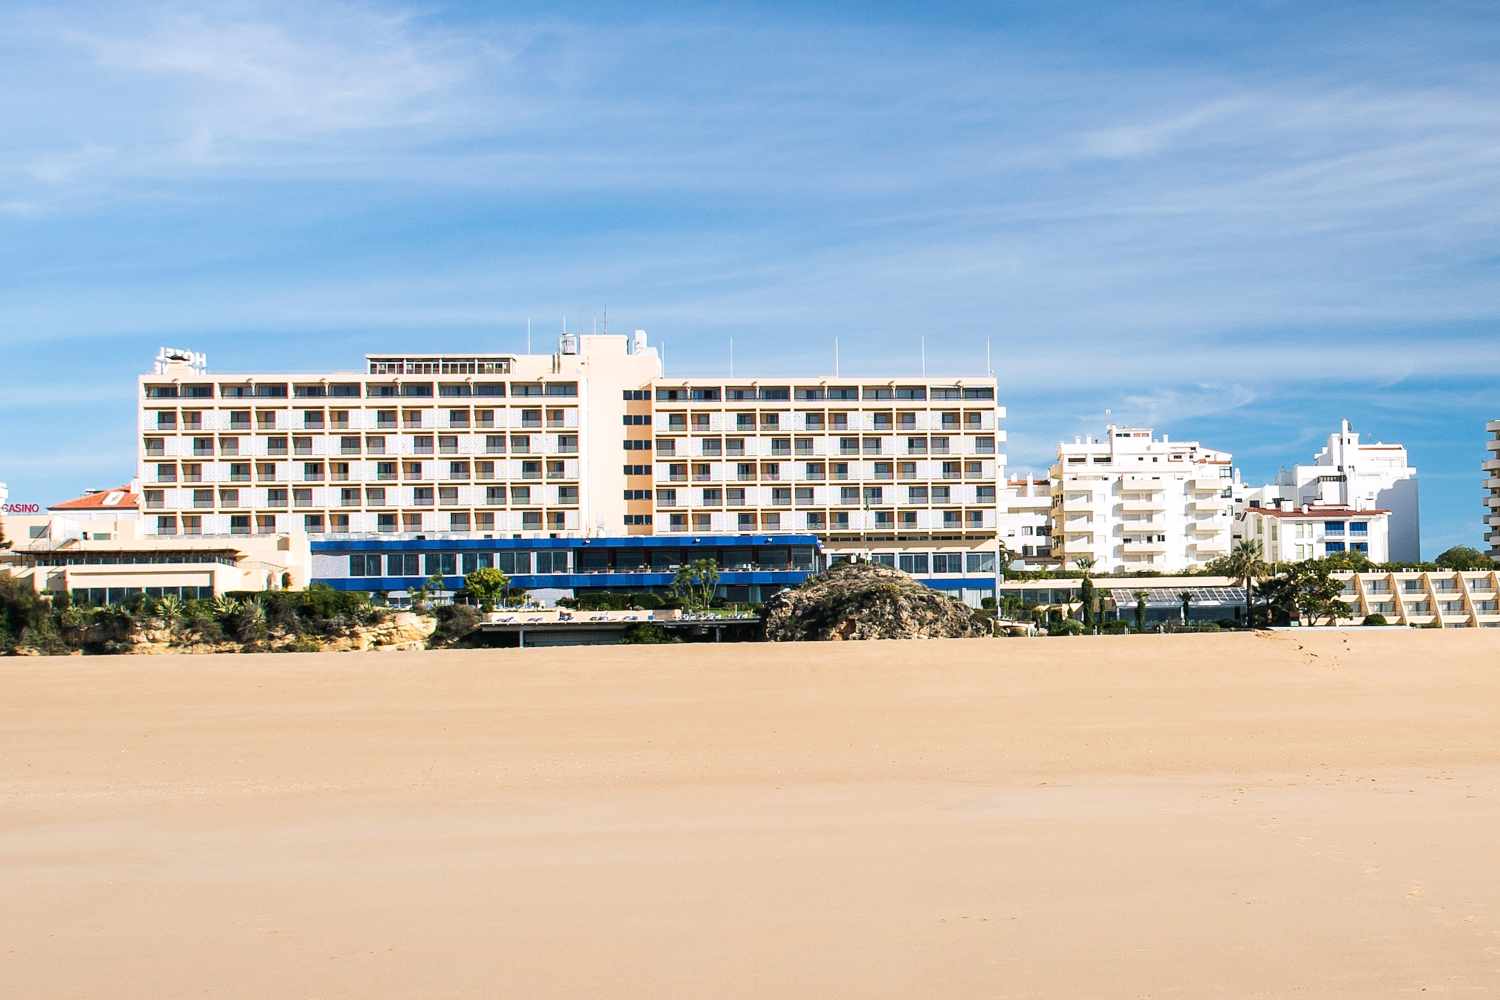 Hotel Algarve Casino, Praia da Rocha, Algarve, Portugal